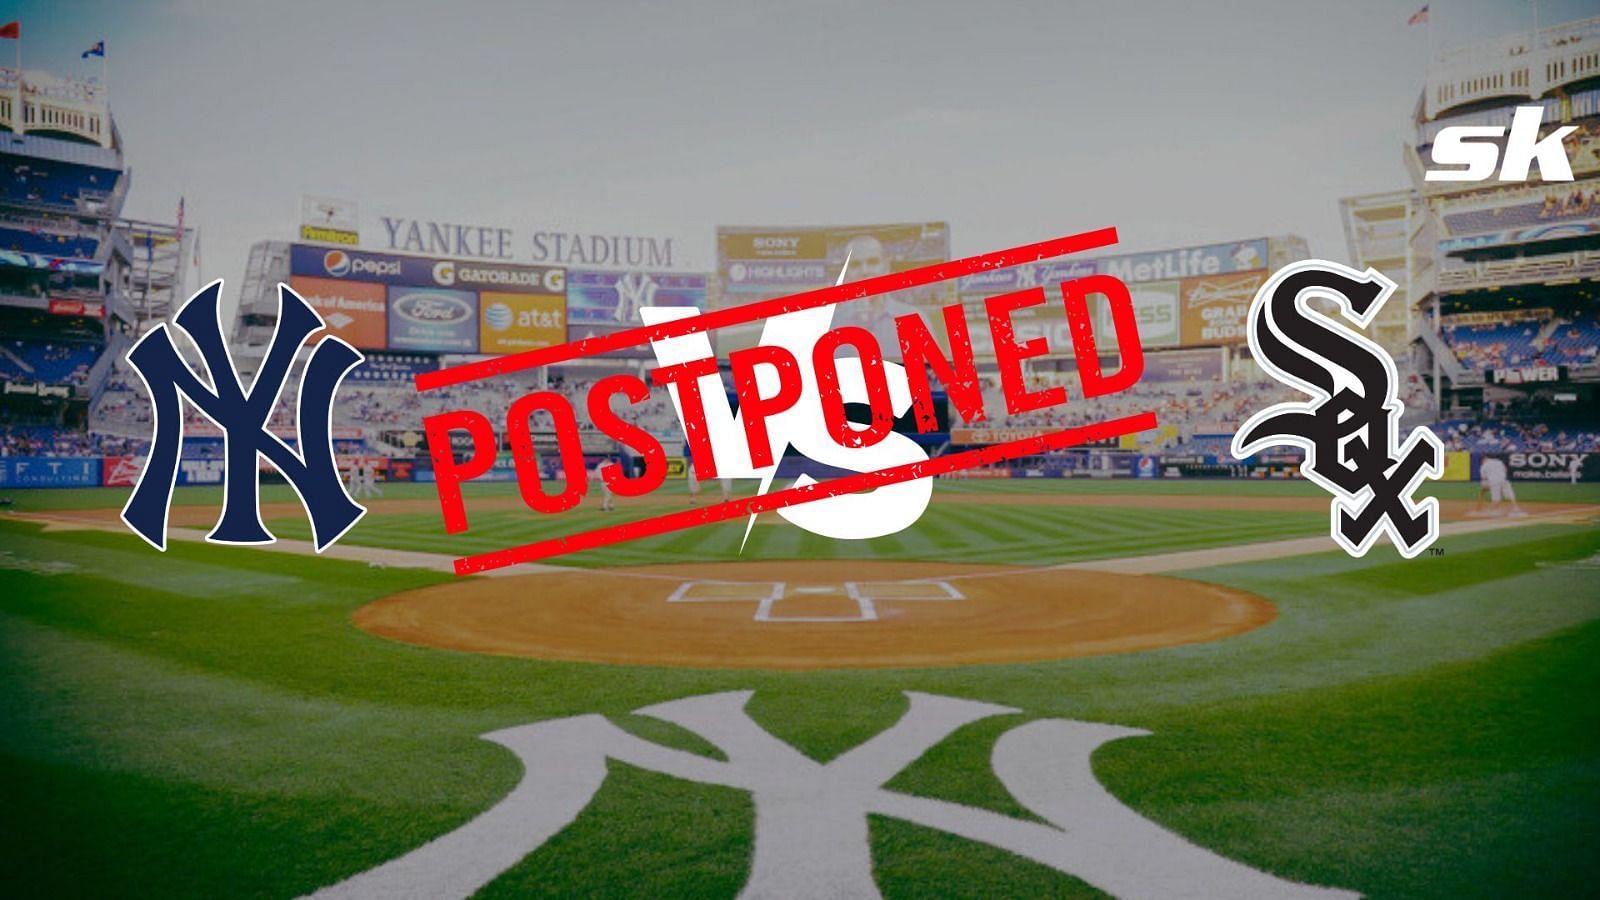 Chicago White Sox vs. New York Yankees game Postponed